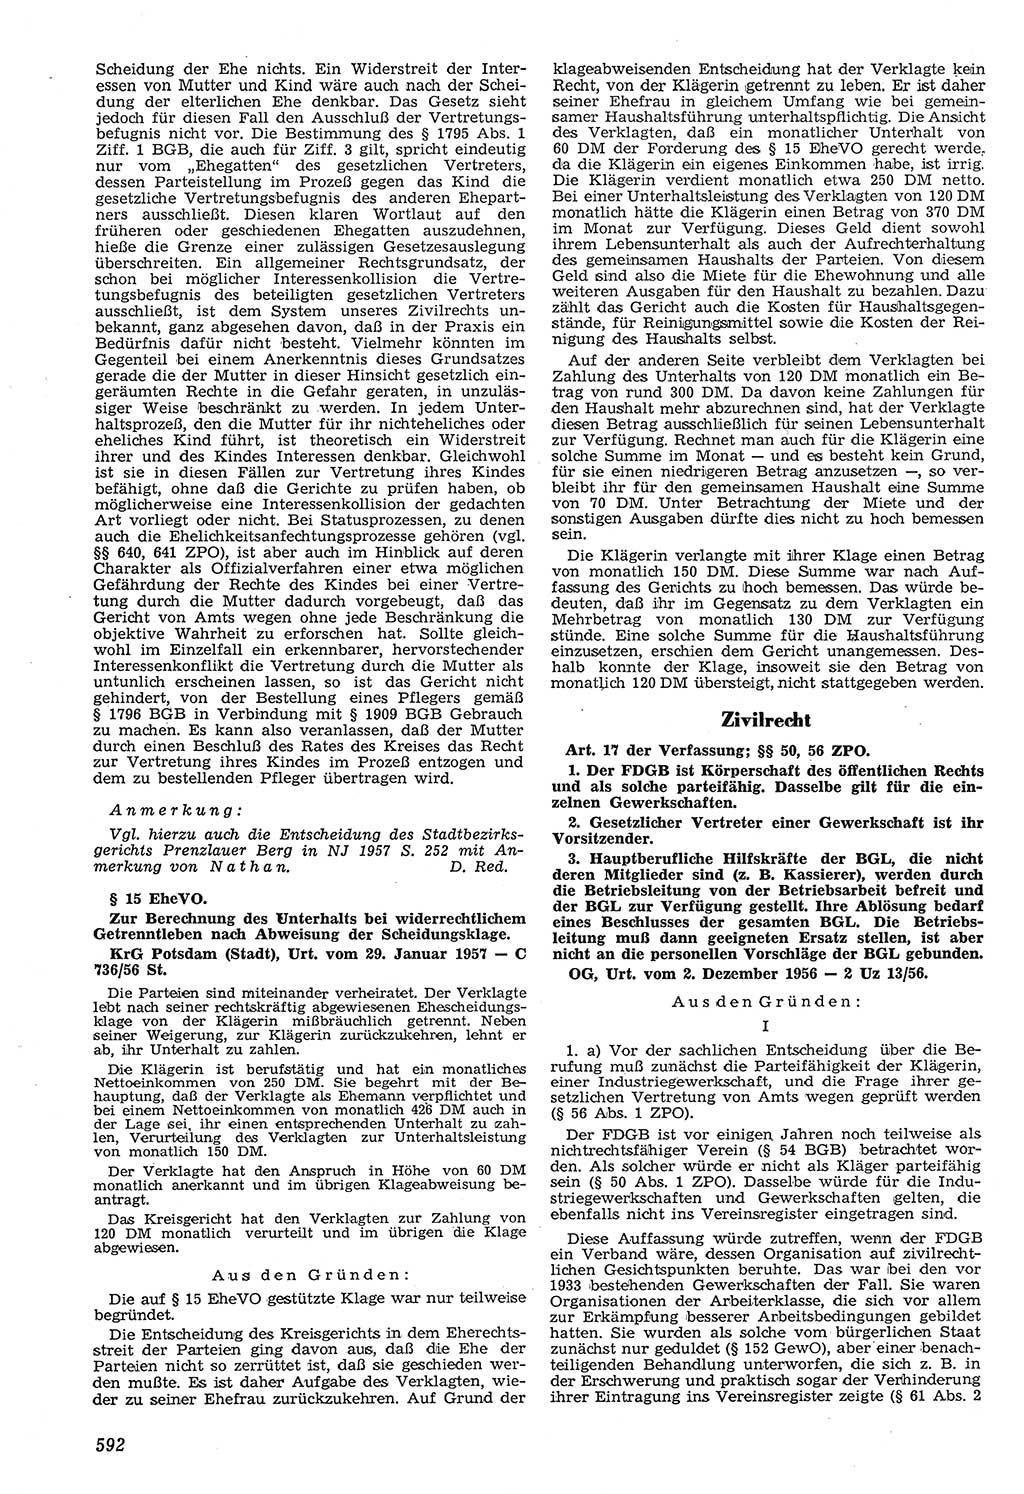 Neue Justiz (NJ), Zeitschrift für Recht und Rechtswissenschaft [Deutsche Demokratische Republik (DDR)], 11. Jahrgang 1957, Seite 592 (NJ DDR 1957, S. 592)